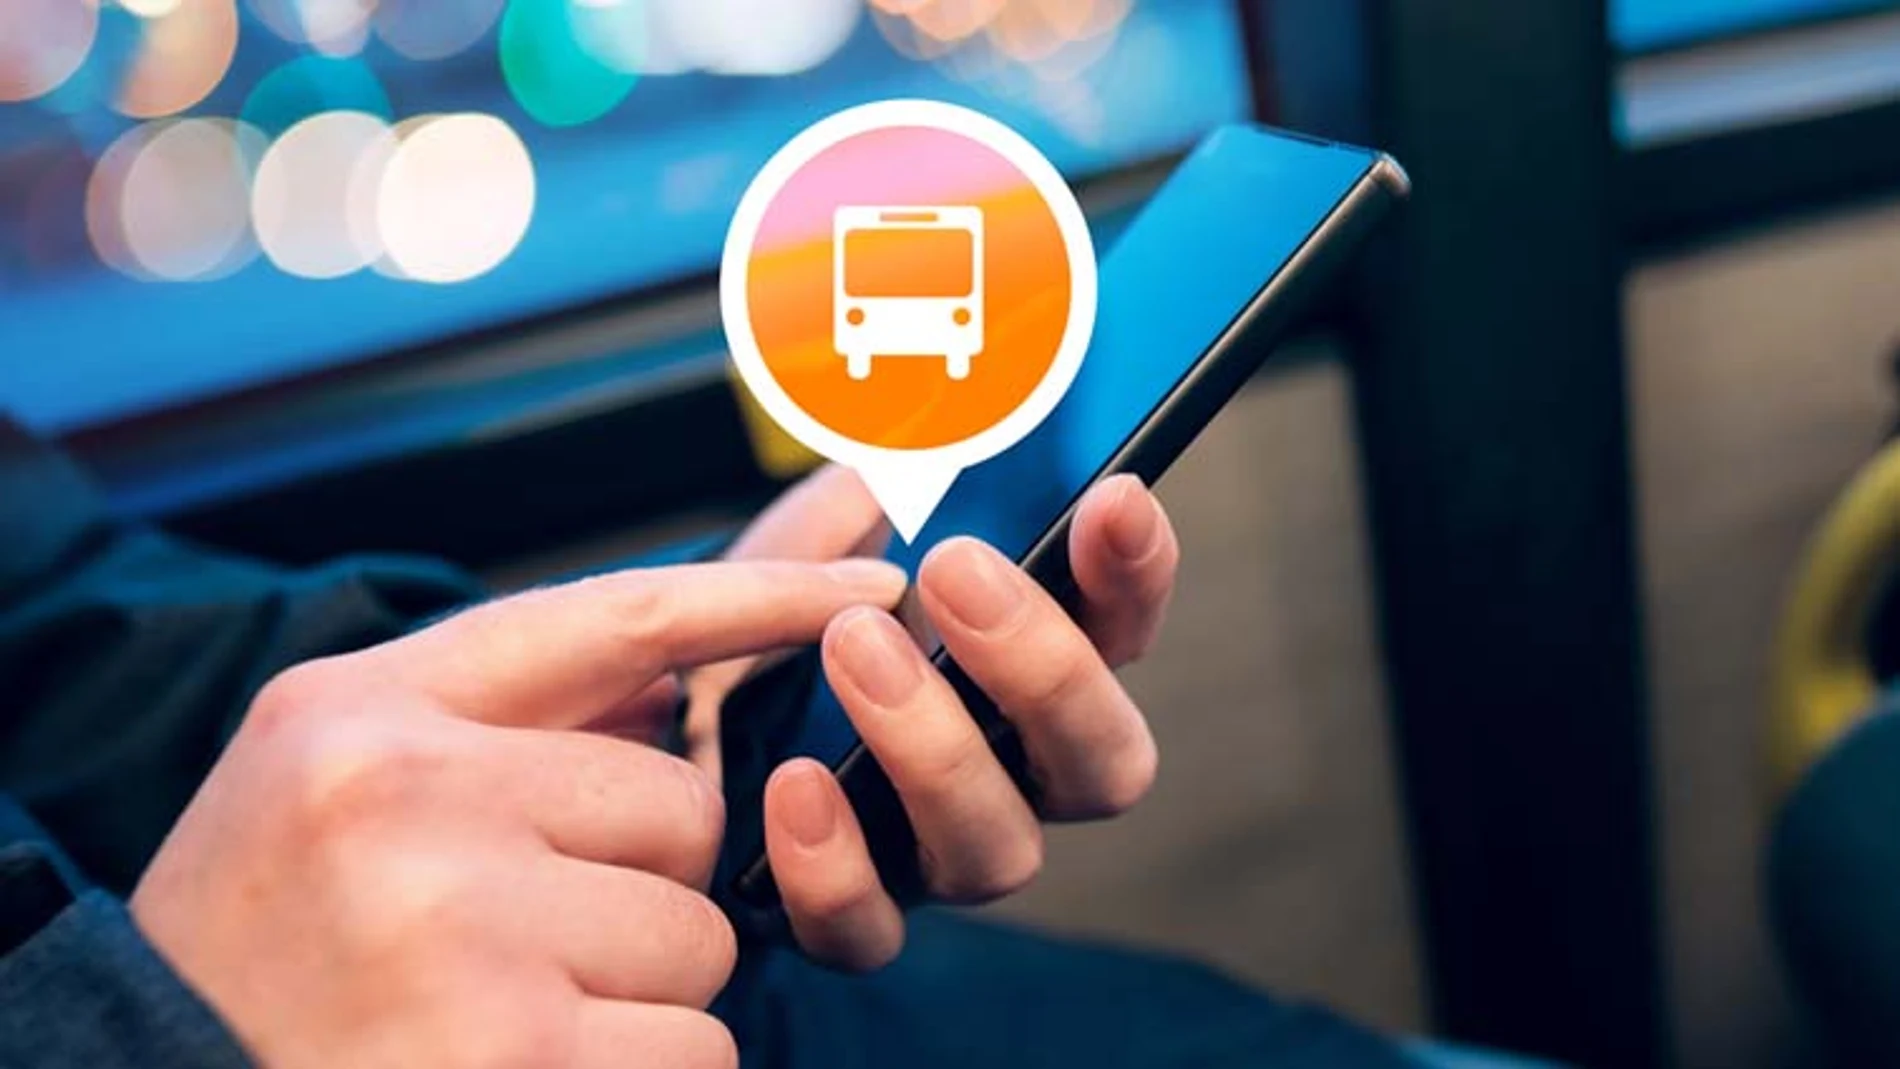 Al acceder al transporte público no será necesario utilizar billetes ni un abono, el pago se podrá realizar desde un móvil Android de forma segura.